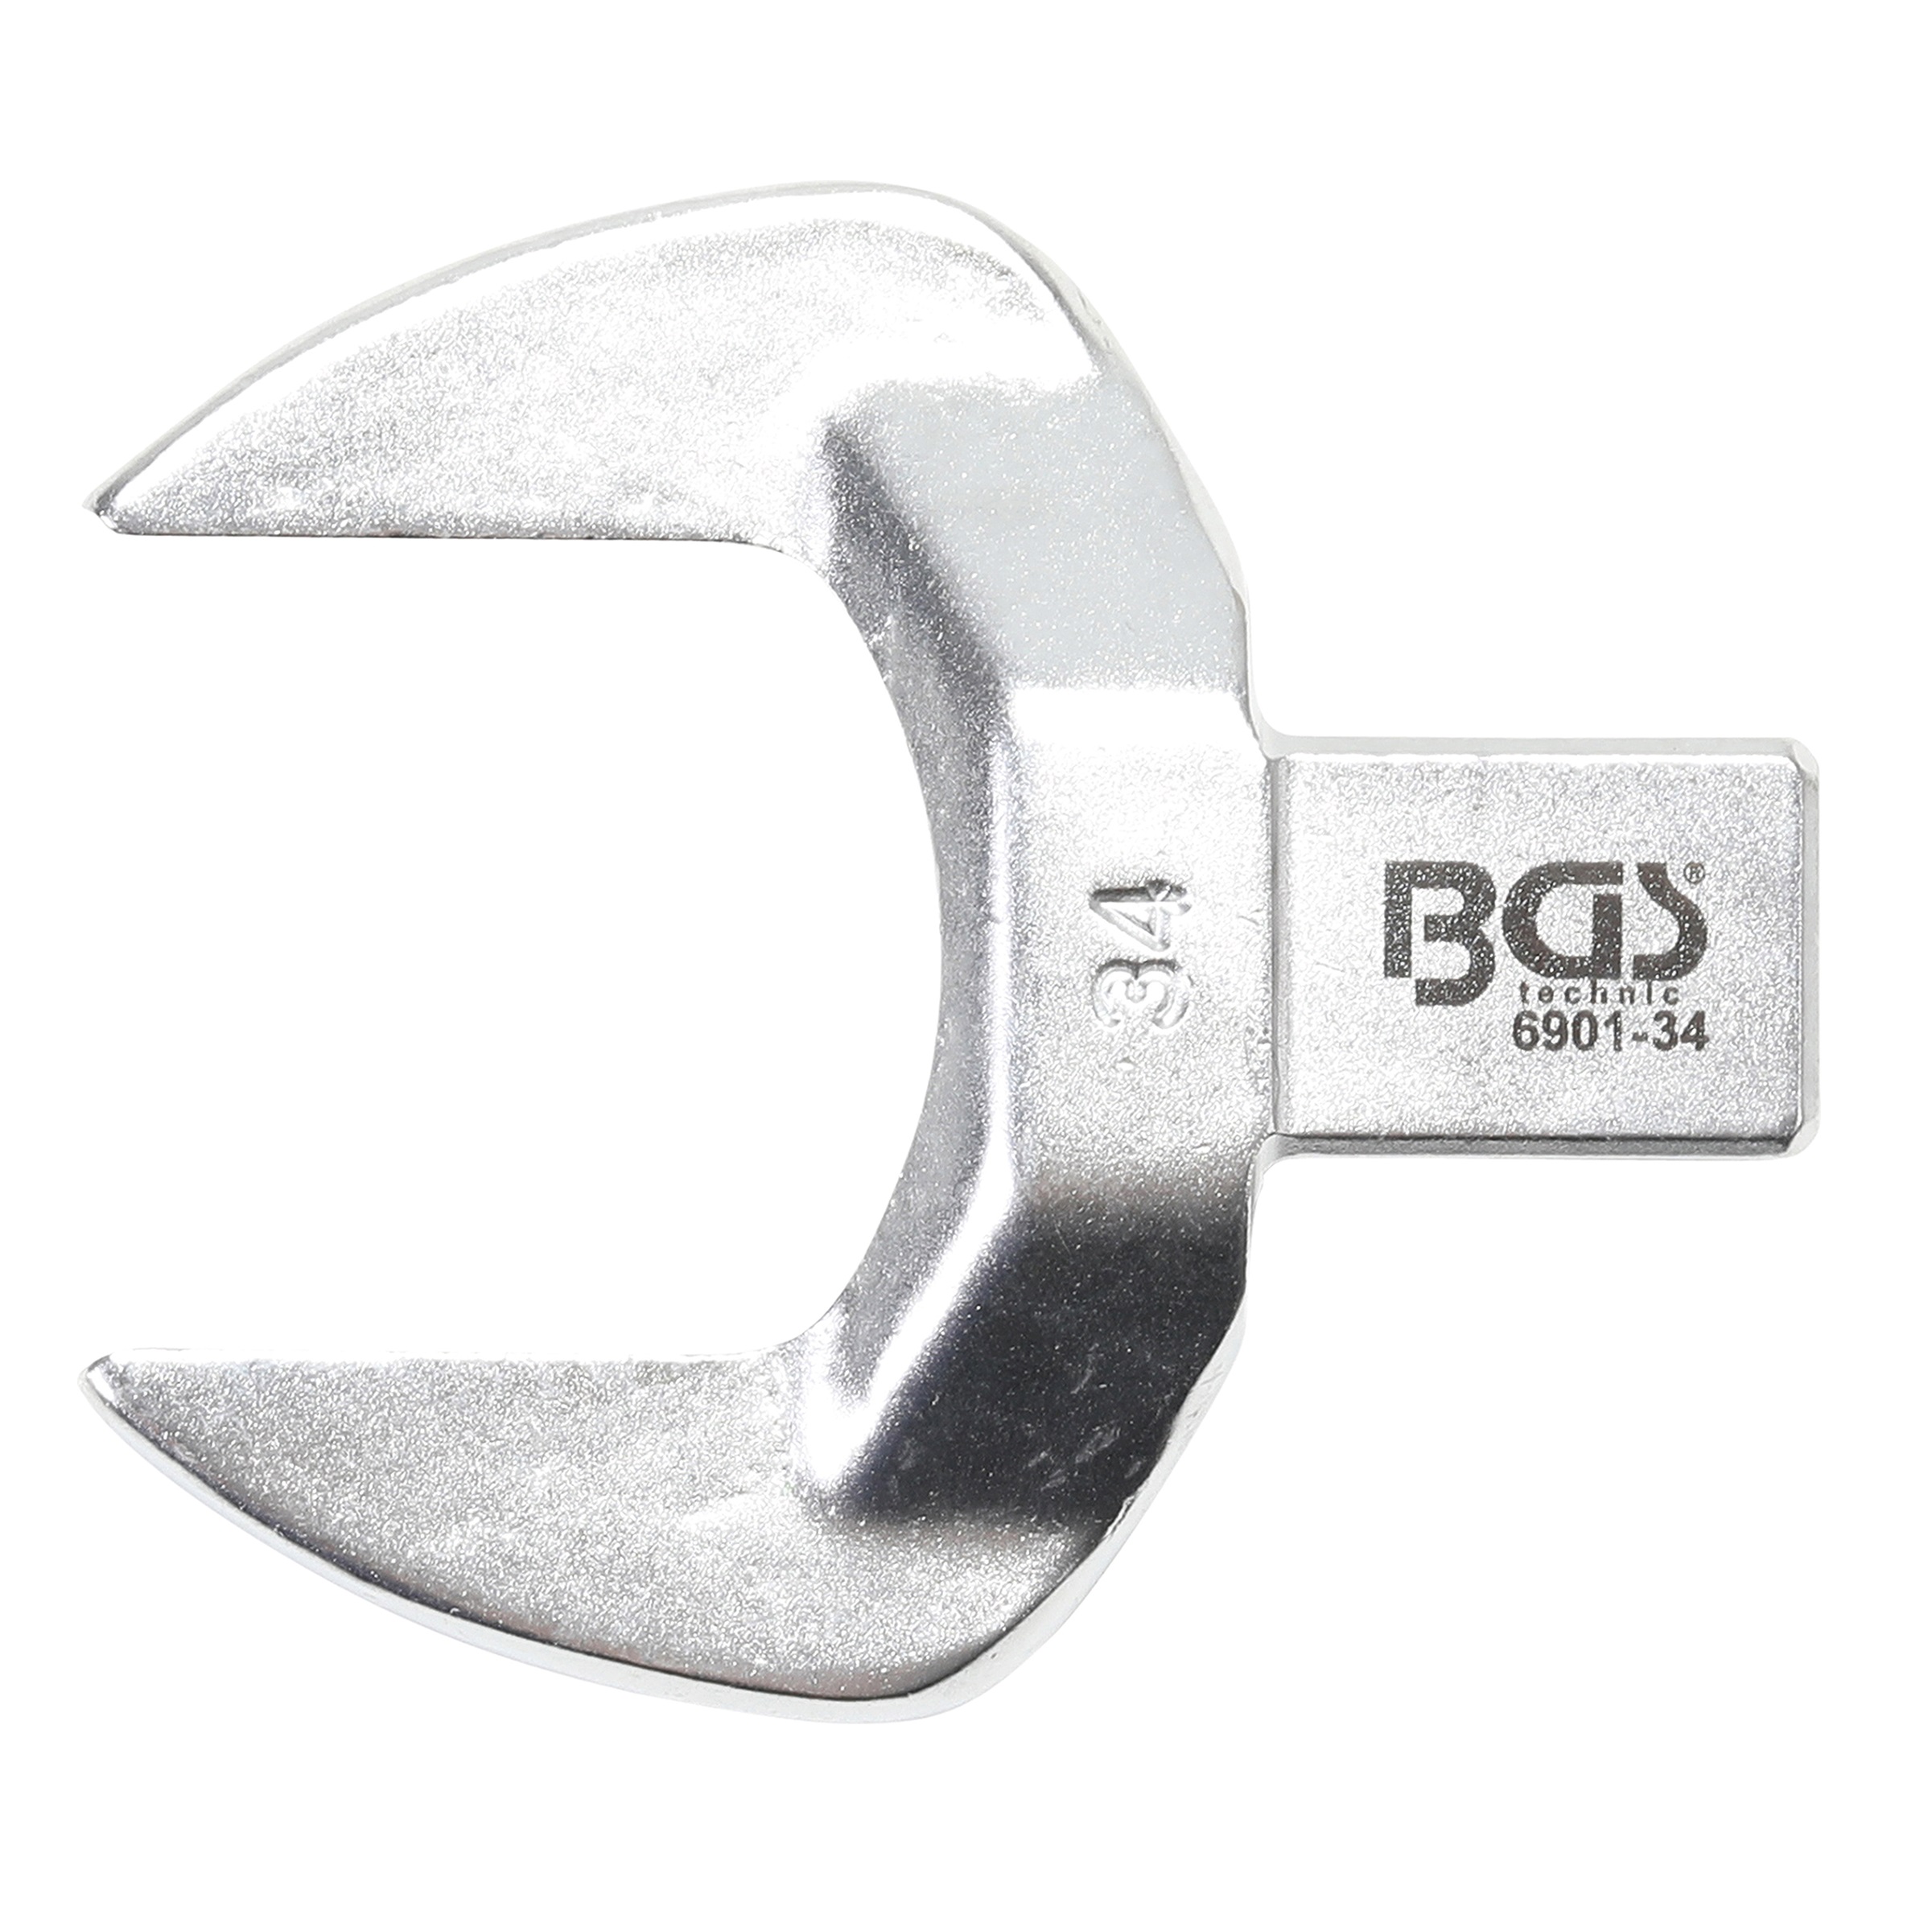 Kľúč nástrčný plochý vidlicový, 34 mm, 4-hran 14 x 18 mm, BGS 6901-34